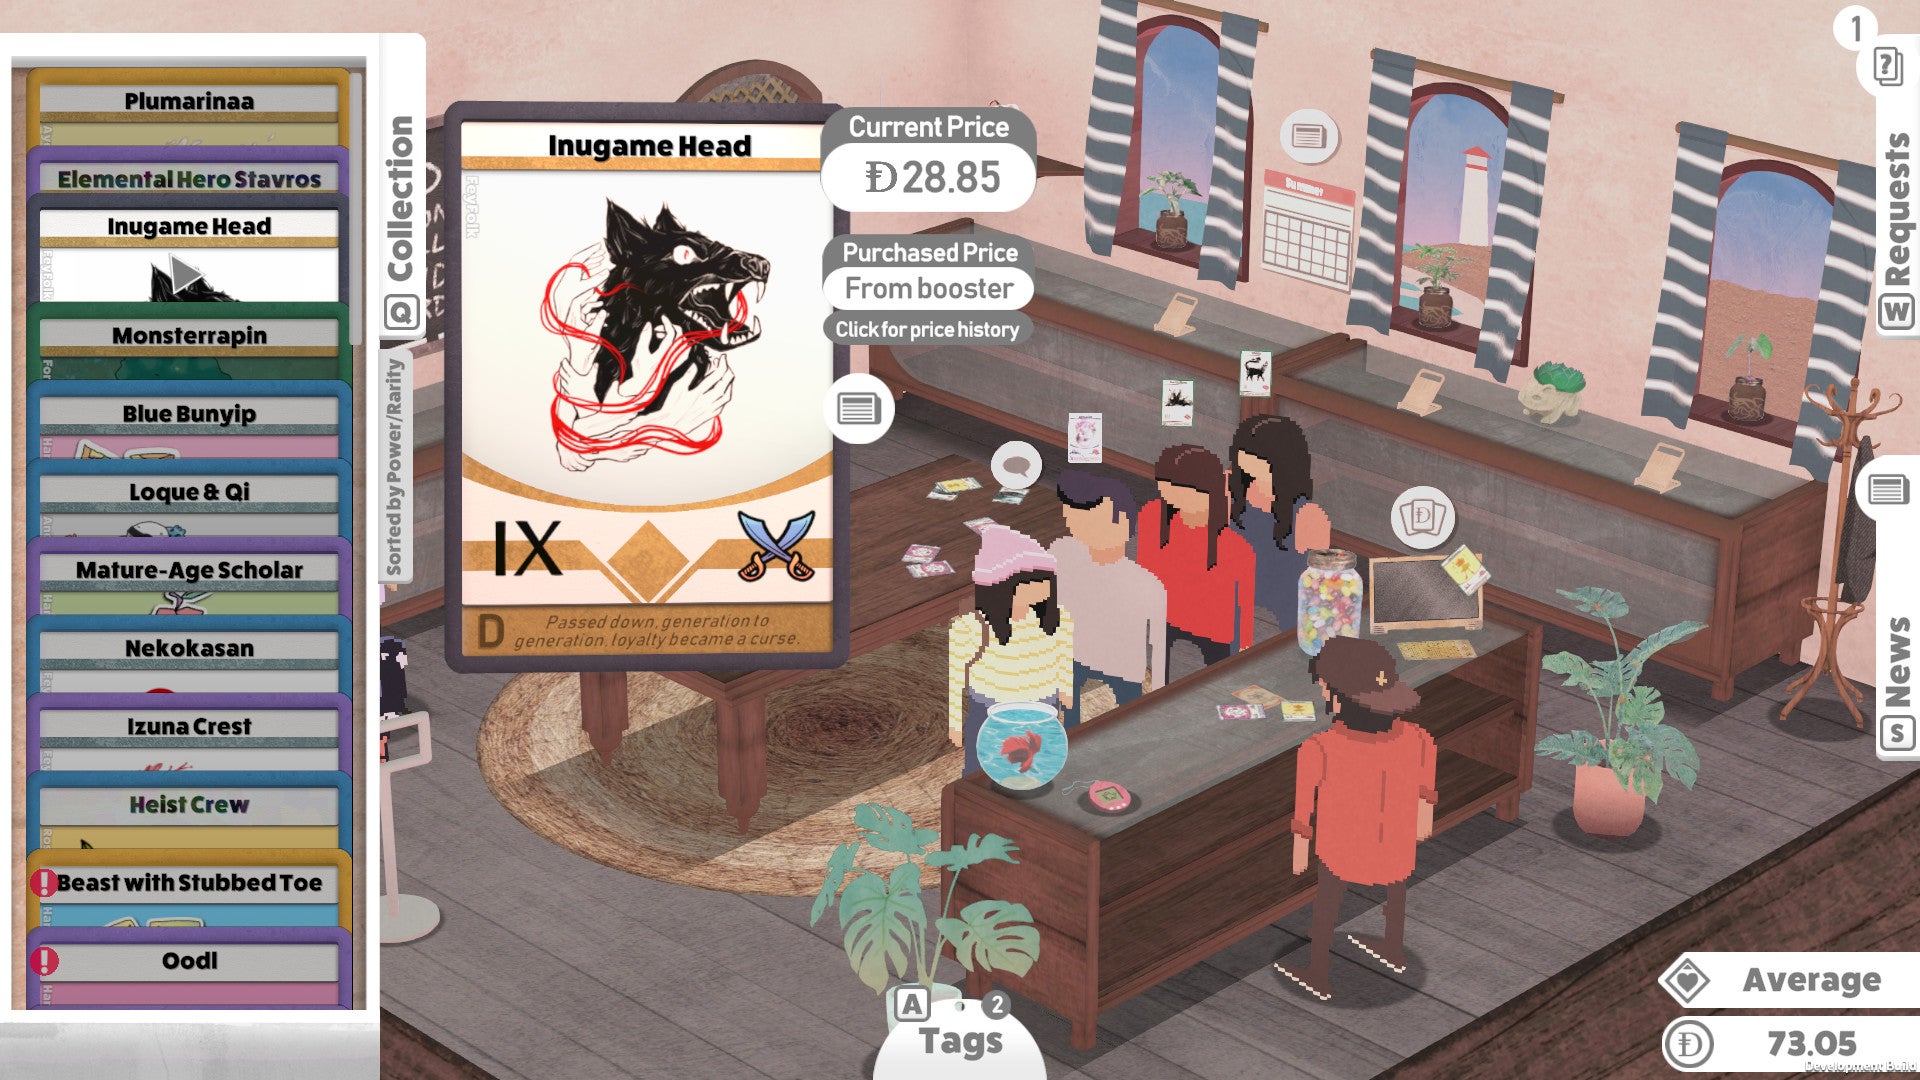 Gnarly card art in a Kardboard Kings: Card Shop Simulator screenshot.